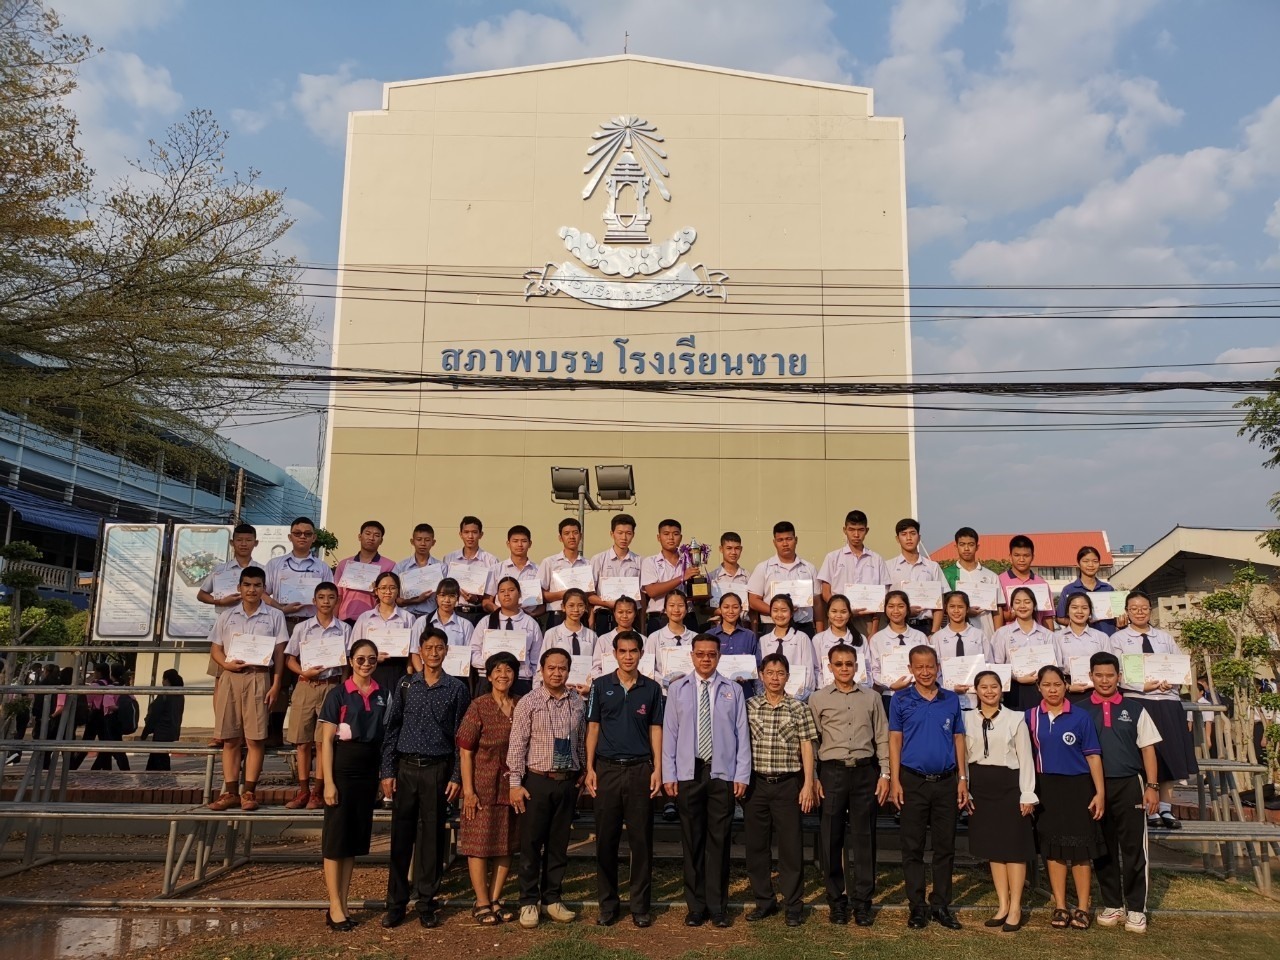 กลุ่มสาระการเรียนรู้ศิลปะ โดยงานทัศนศิลป์และงานดนตรีไทย ได้เข้าร่วมกิจกรรมงาน “ลานวัฒนธรรม 8 วิถี พิพิธภัณฑ์เมืองลับแล” ประจำปี 2562